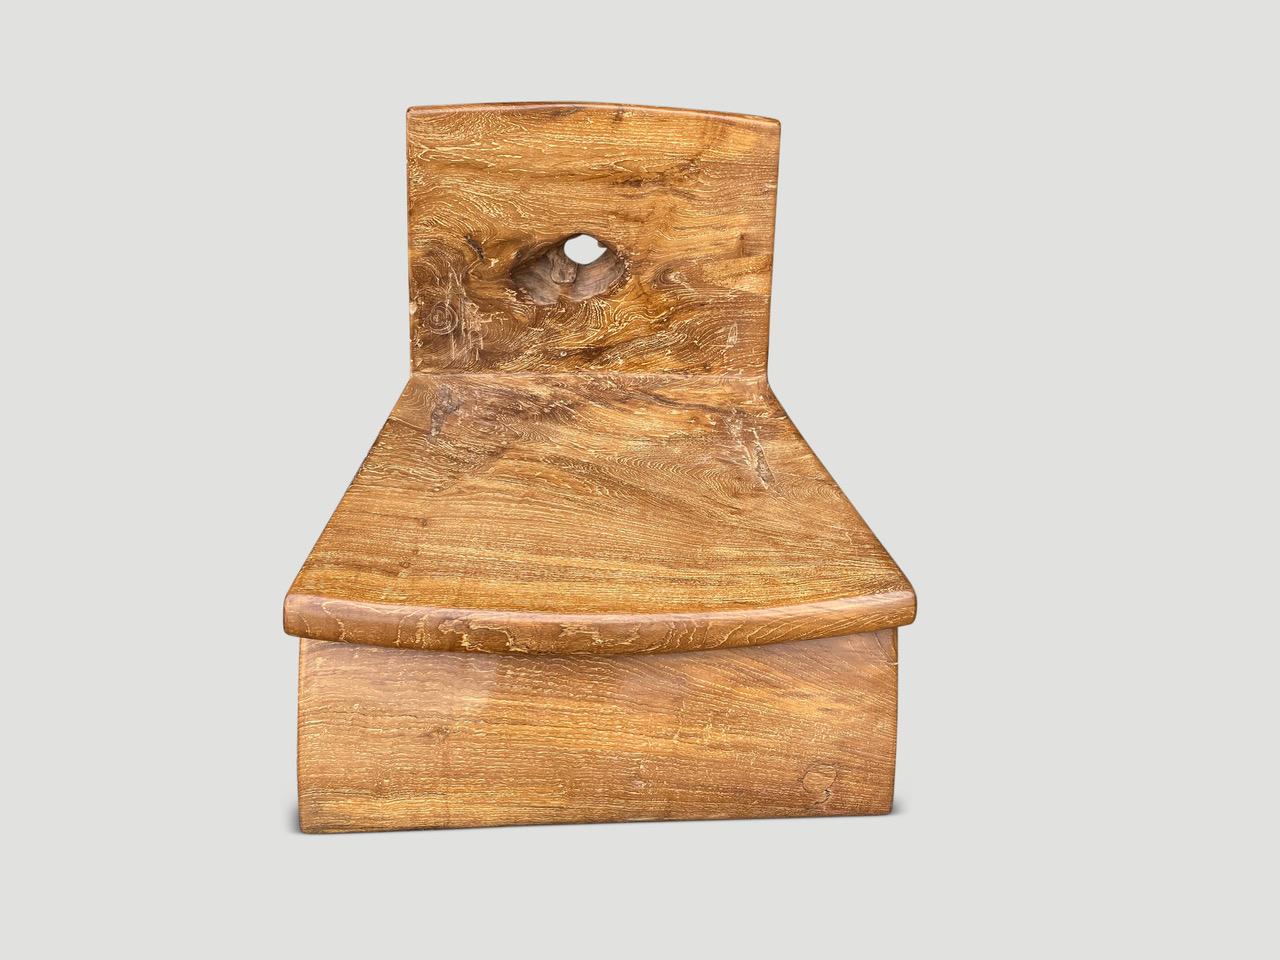 Beeindruckender niedriger Stuhl, handgefertigt aus jahrhundertealtem Teakholz mit schönem Charakter. Das vordere Bein, der Sitz und die Rückenlehne sind aus einem einzigen Block alten Teakholzes handgeschnitzt. Wir haben ein einzelnes Stück Holz für